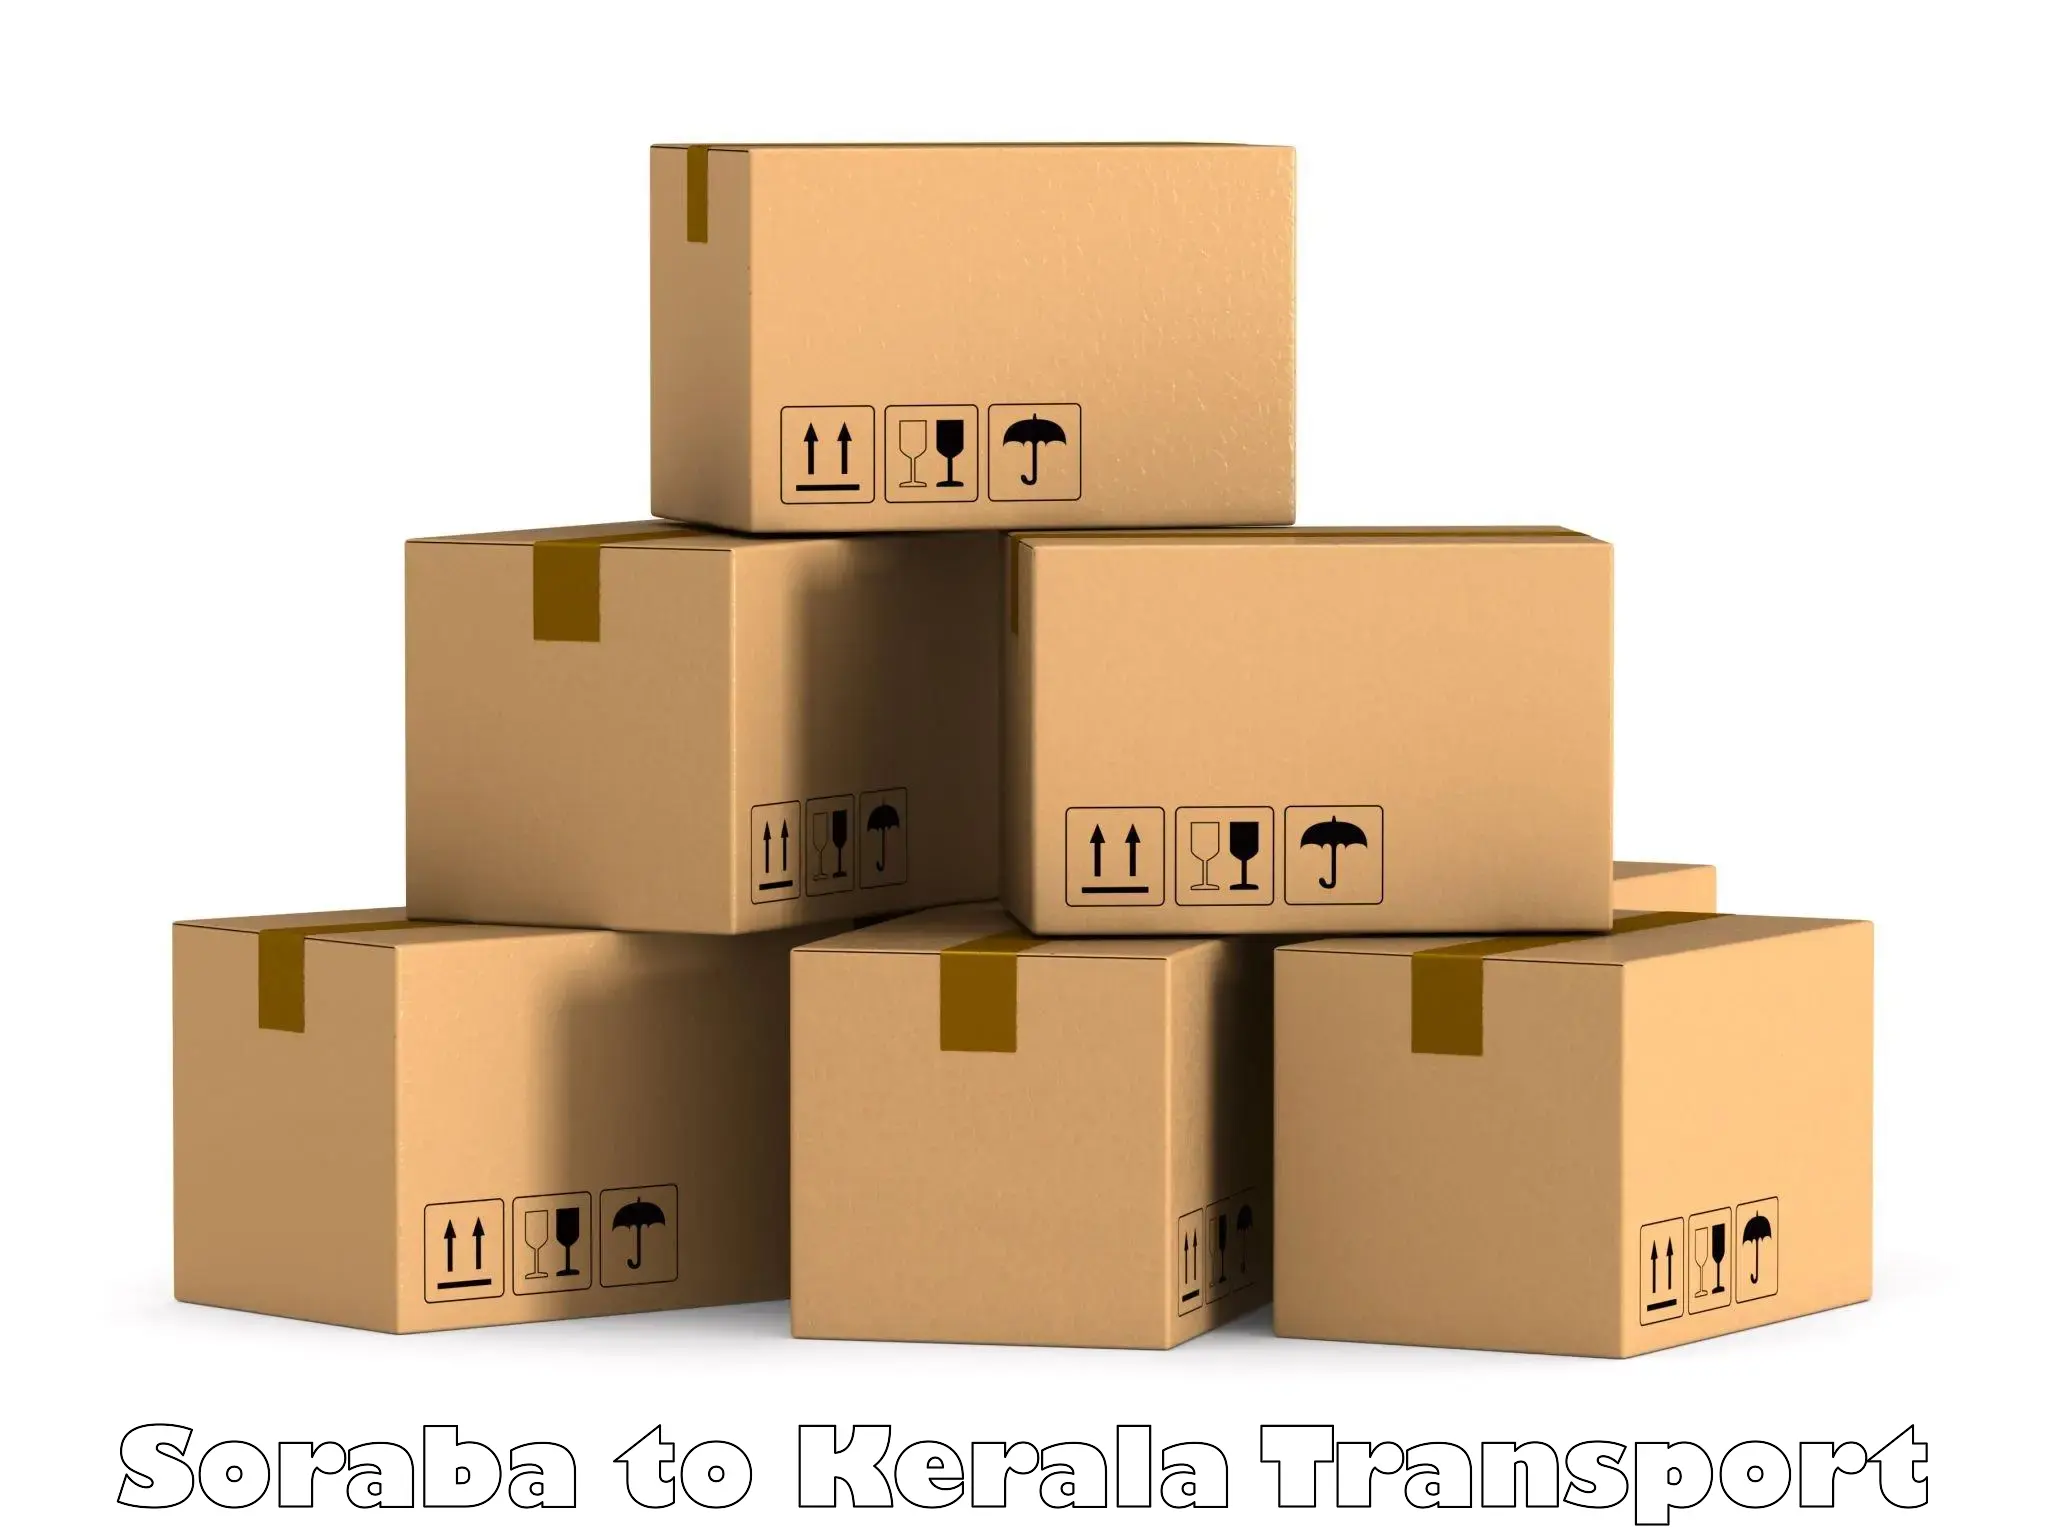 India truck logistics services Soraba to Kerala